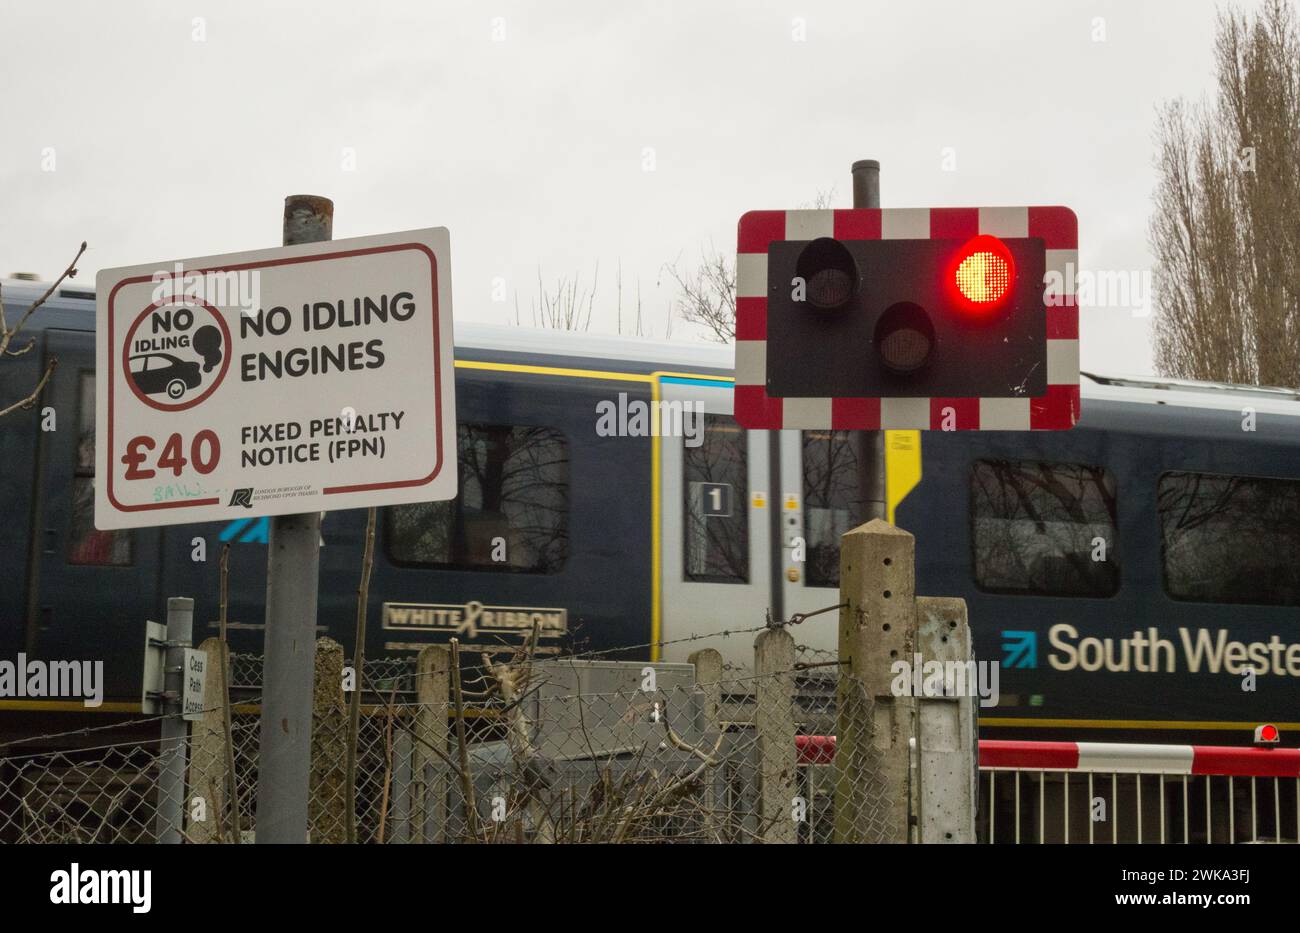 Pas de moteur au ralenti signalisation de pénalité fixe à un passage à niveau à Londres, Angleterre, Royaume-Uni Banque D'Images